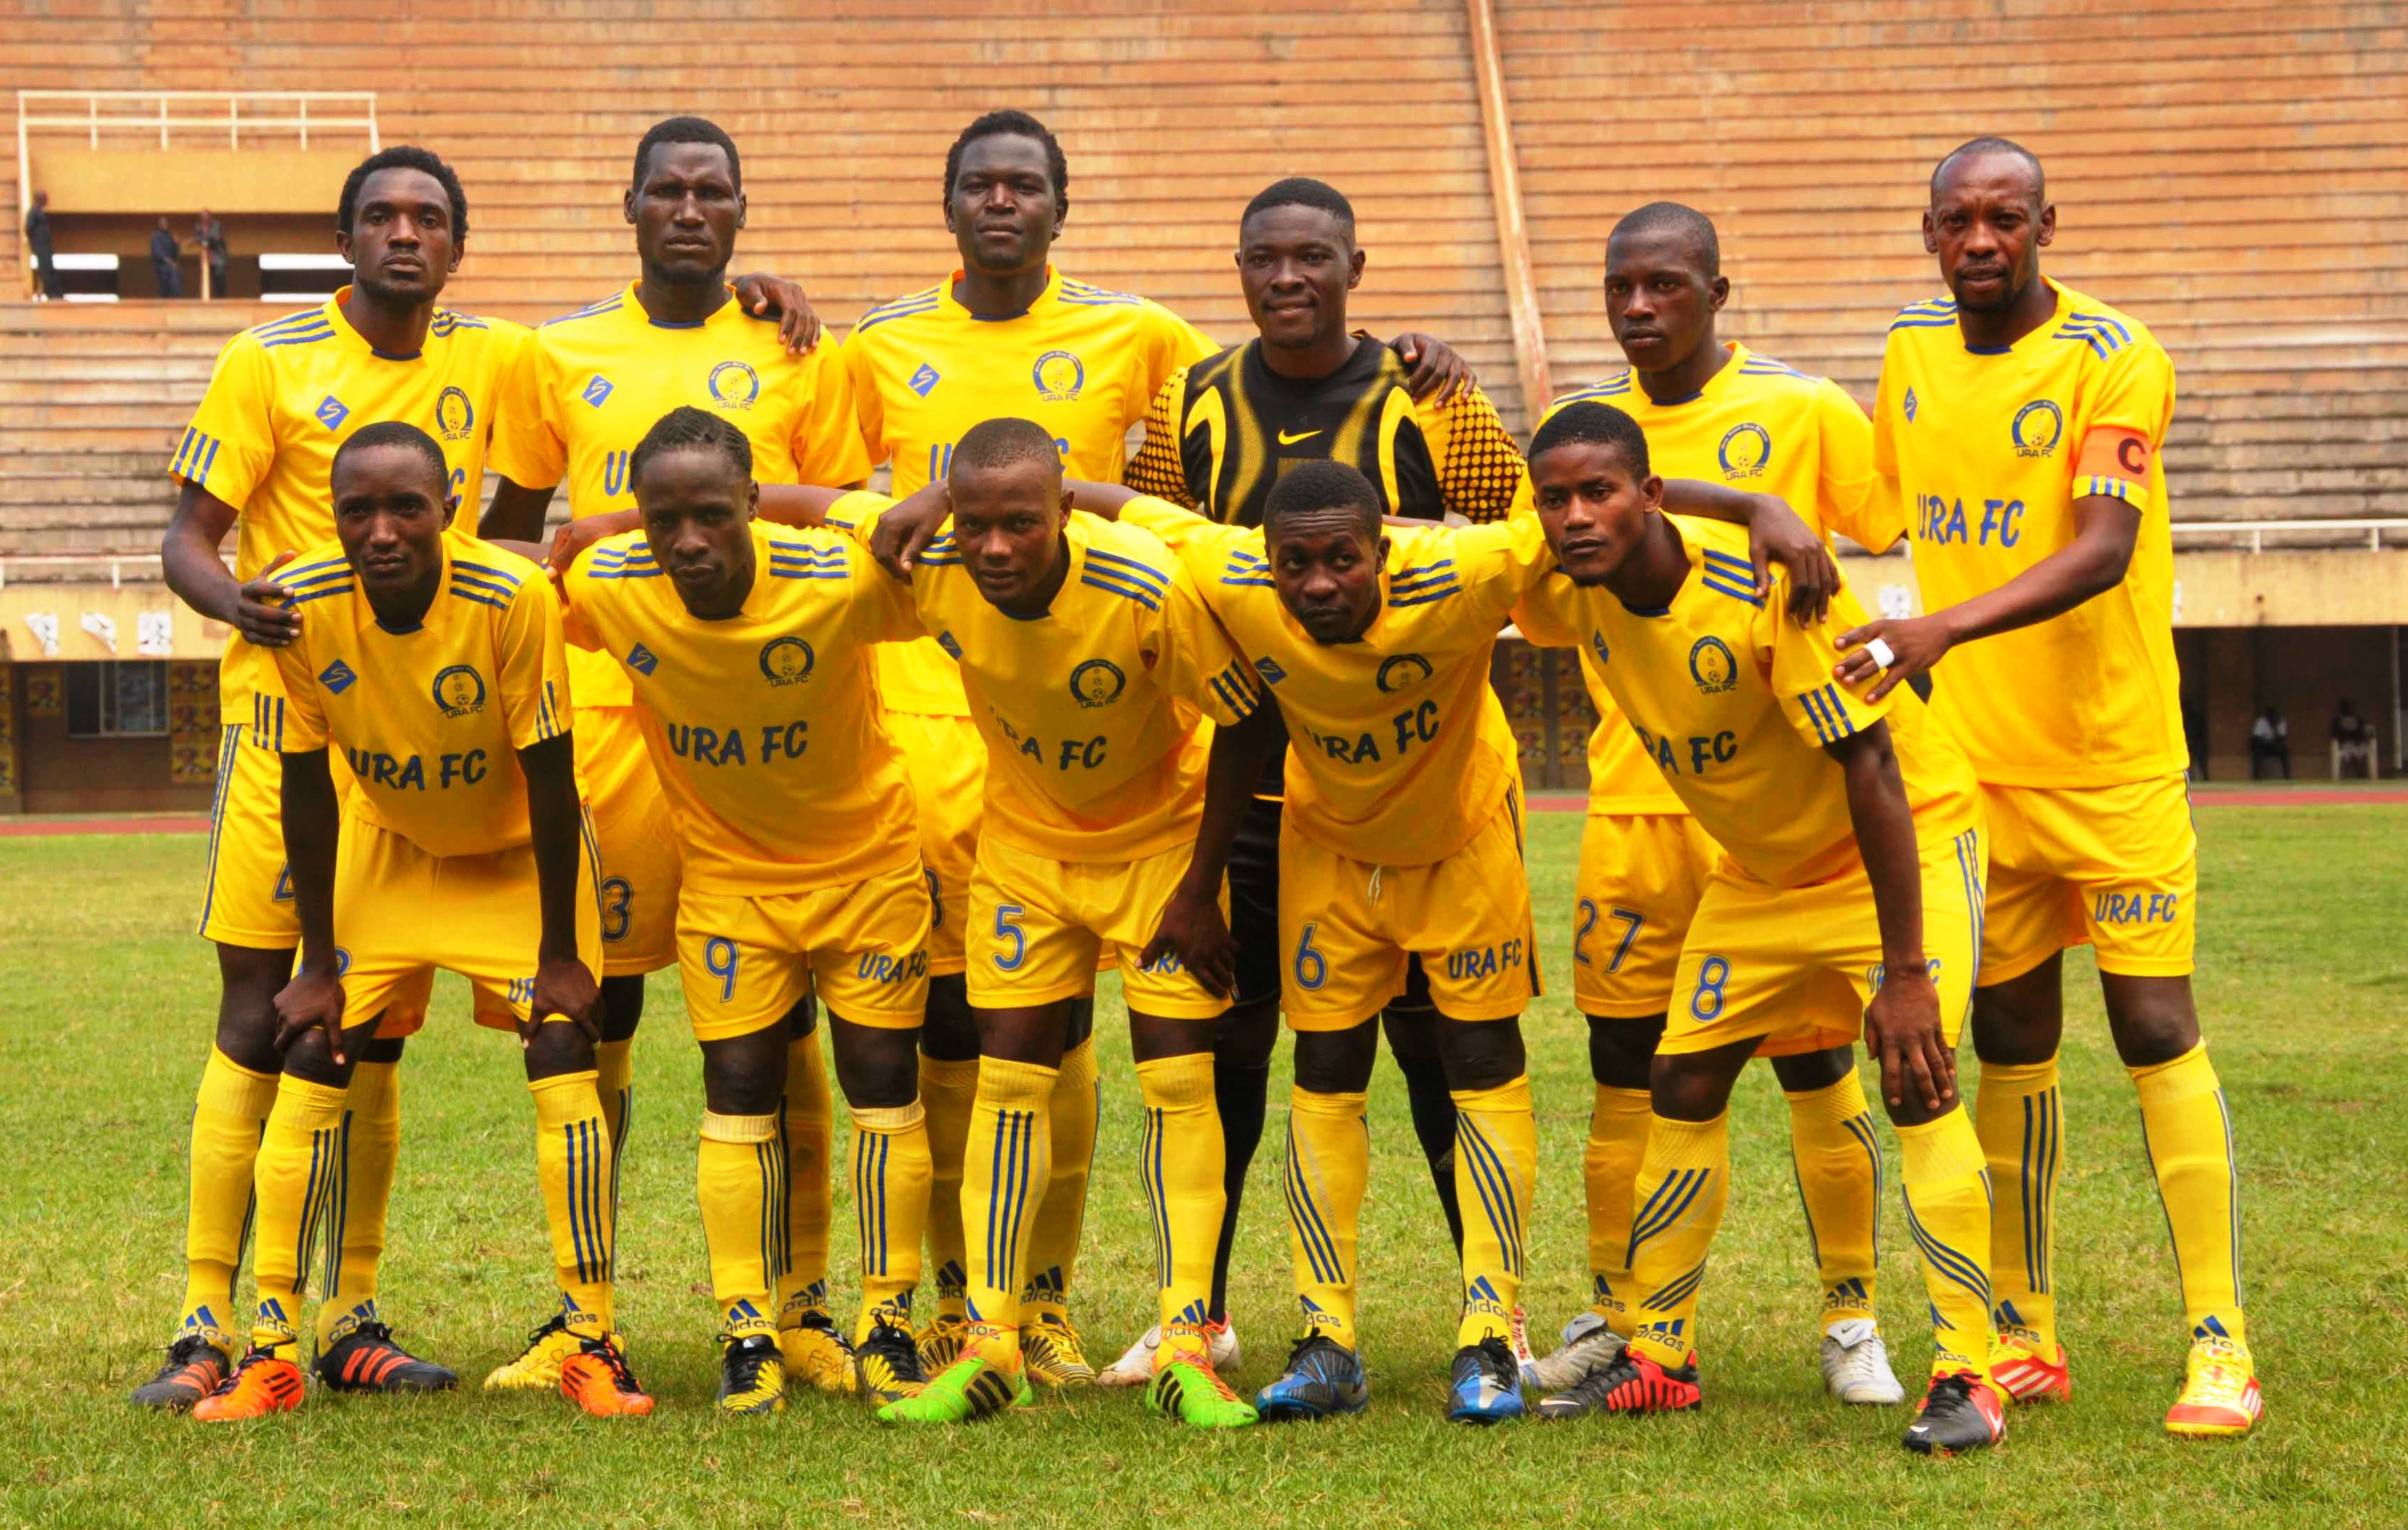 Resultado de imagem para SC URA Uganda Revenue Authority Sports Club